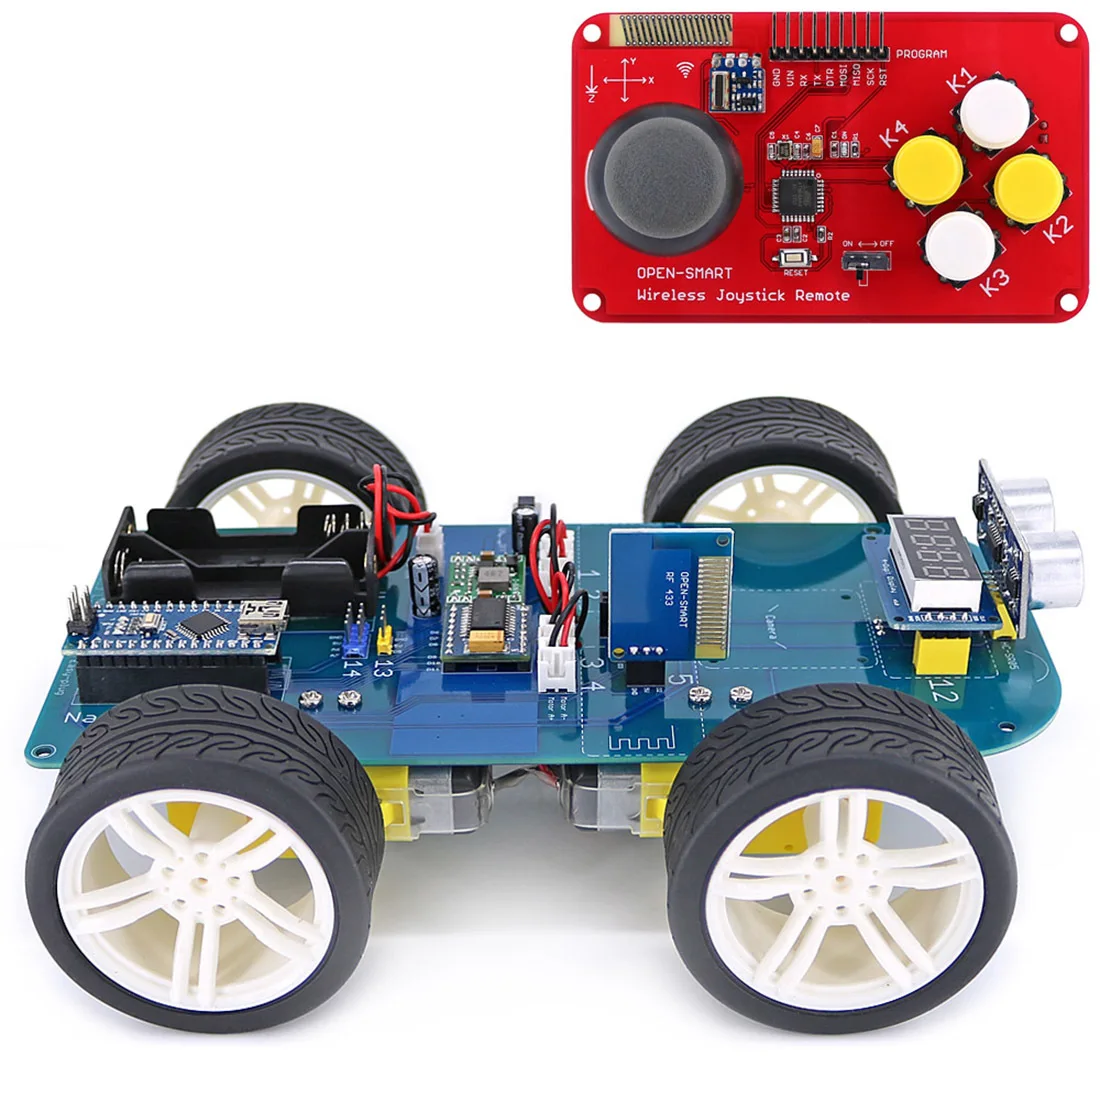 4wd 315/433mhz беспроводной джойстик пульт дистанционного управления резиновый колесный мотор-редуктор умный автомобильный комплект для Arduino высокотехнологичная программируемая игрушка